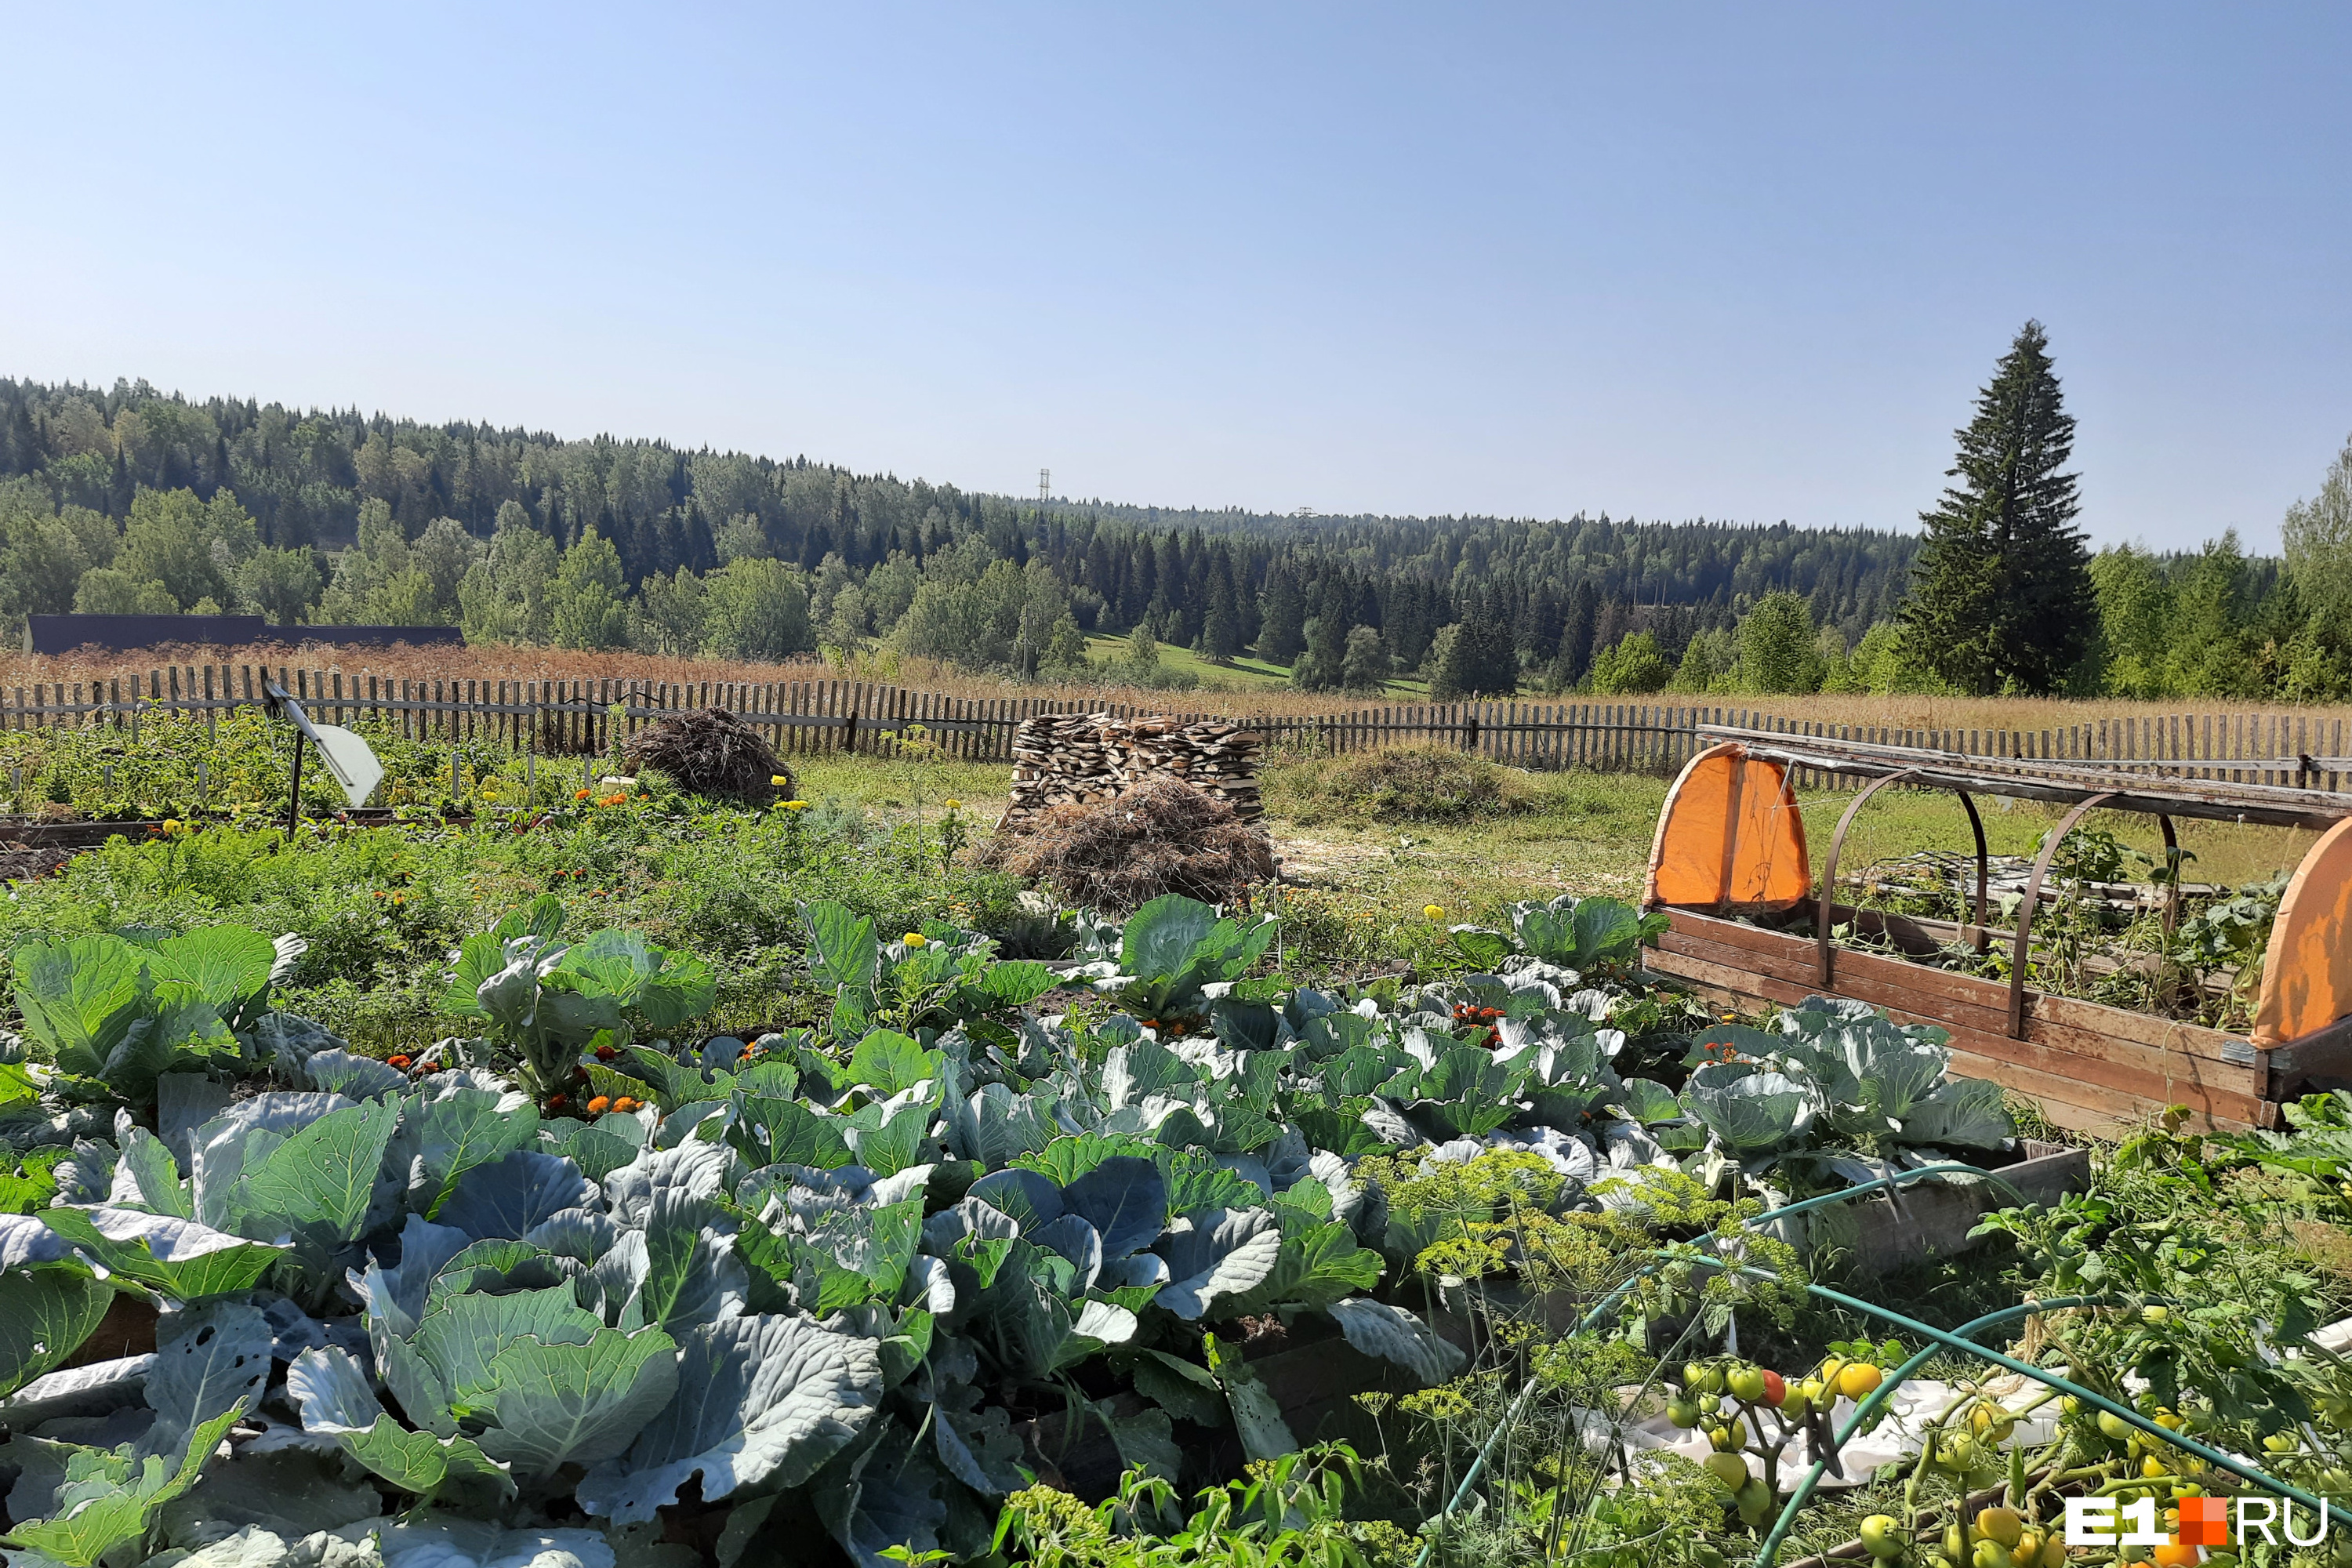 Агроном дал семь простых советов, как избавить капусту от слизней изащитить урожай, делаем своими руками ловушки на огороде, как правильнополивать капусту - 29 августа 2021 - e1.ru